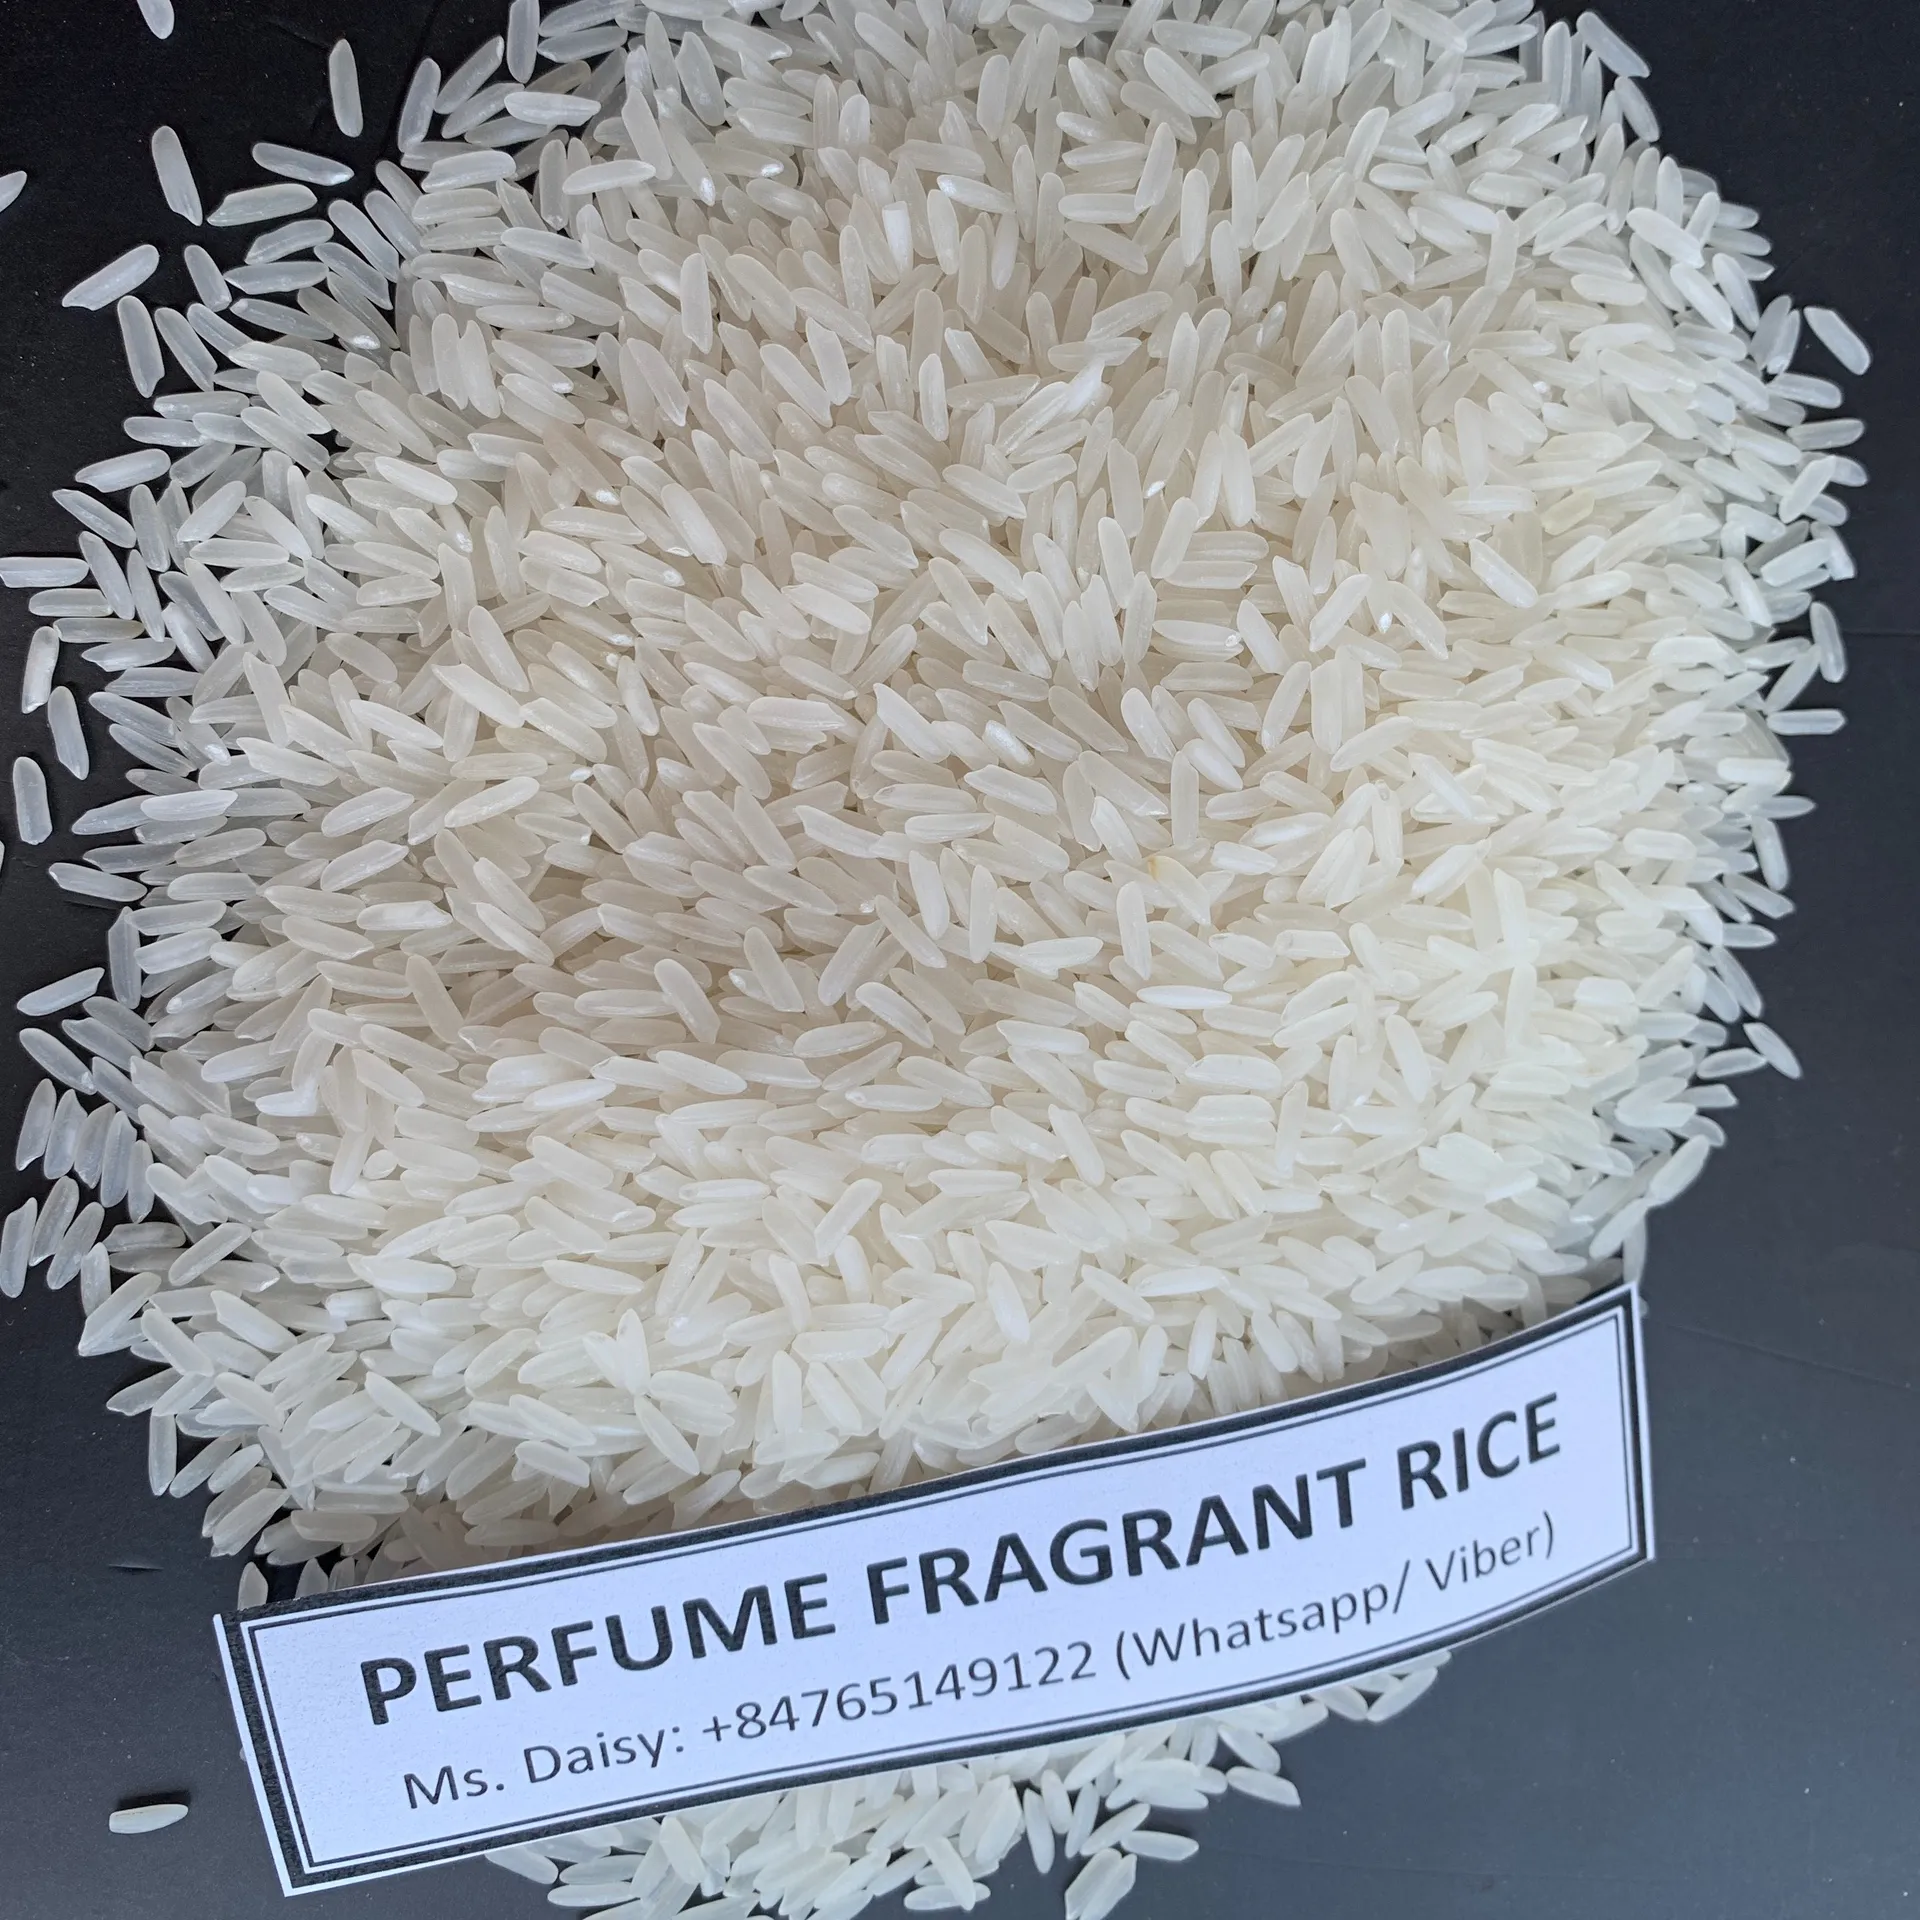 Kokulu pirinç-hattı işleme ve ihracatı: Mr.Brian + 84 796855283